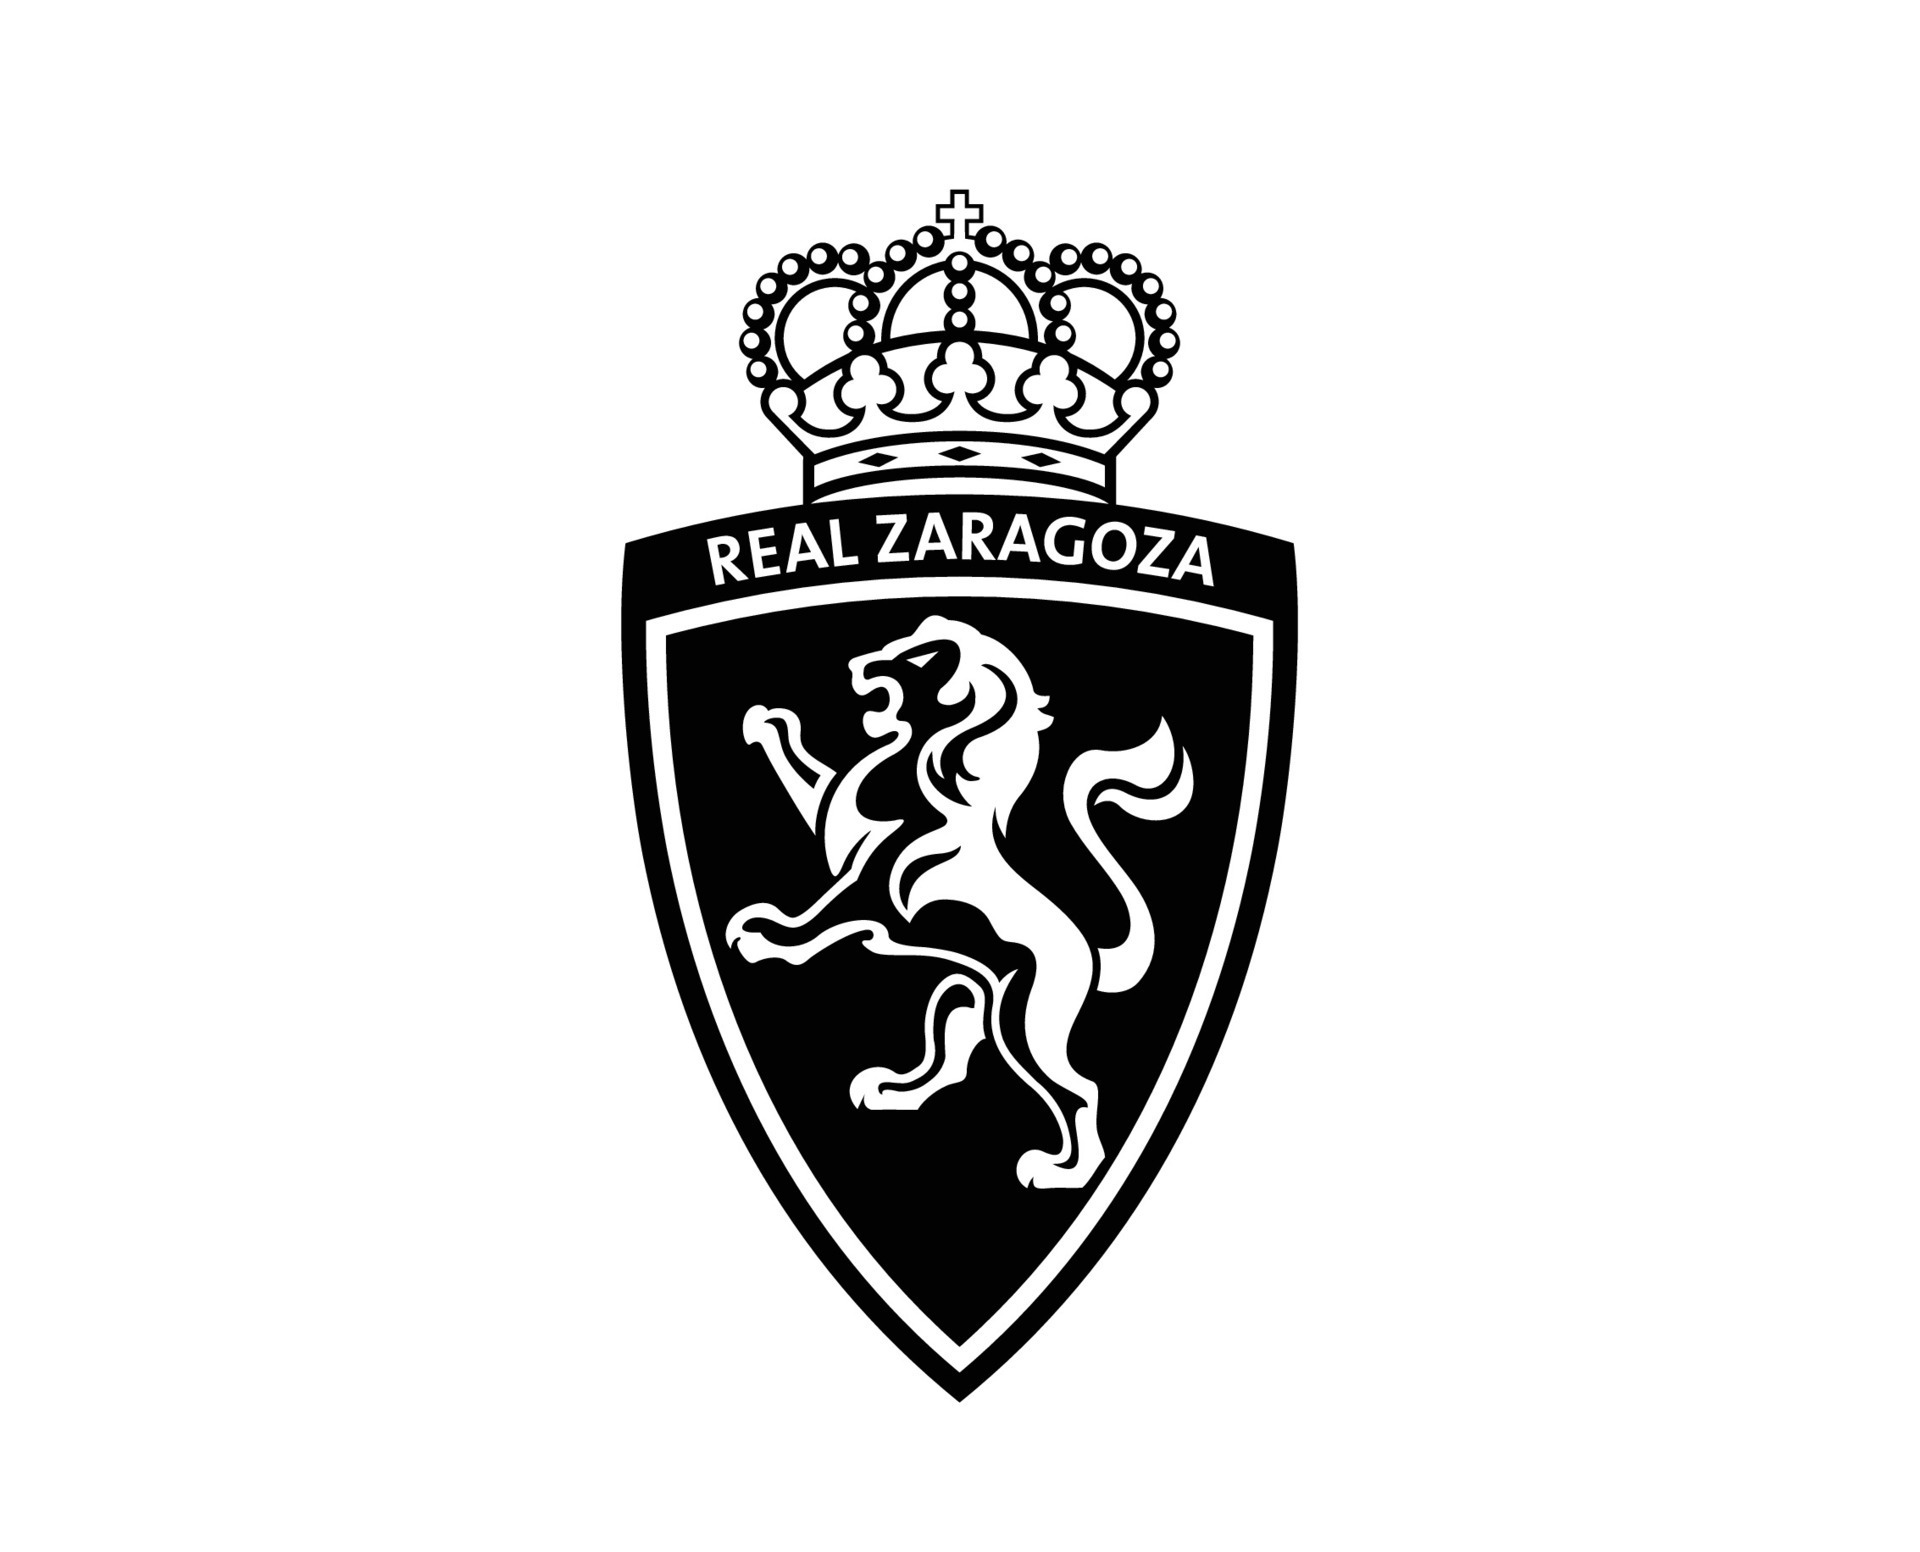 Real Zaragoza Club Logo Symbol Black La Liga Spain Football Abstract Design  Vector Illustration 27011583 Vector Art at Vecteezy